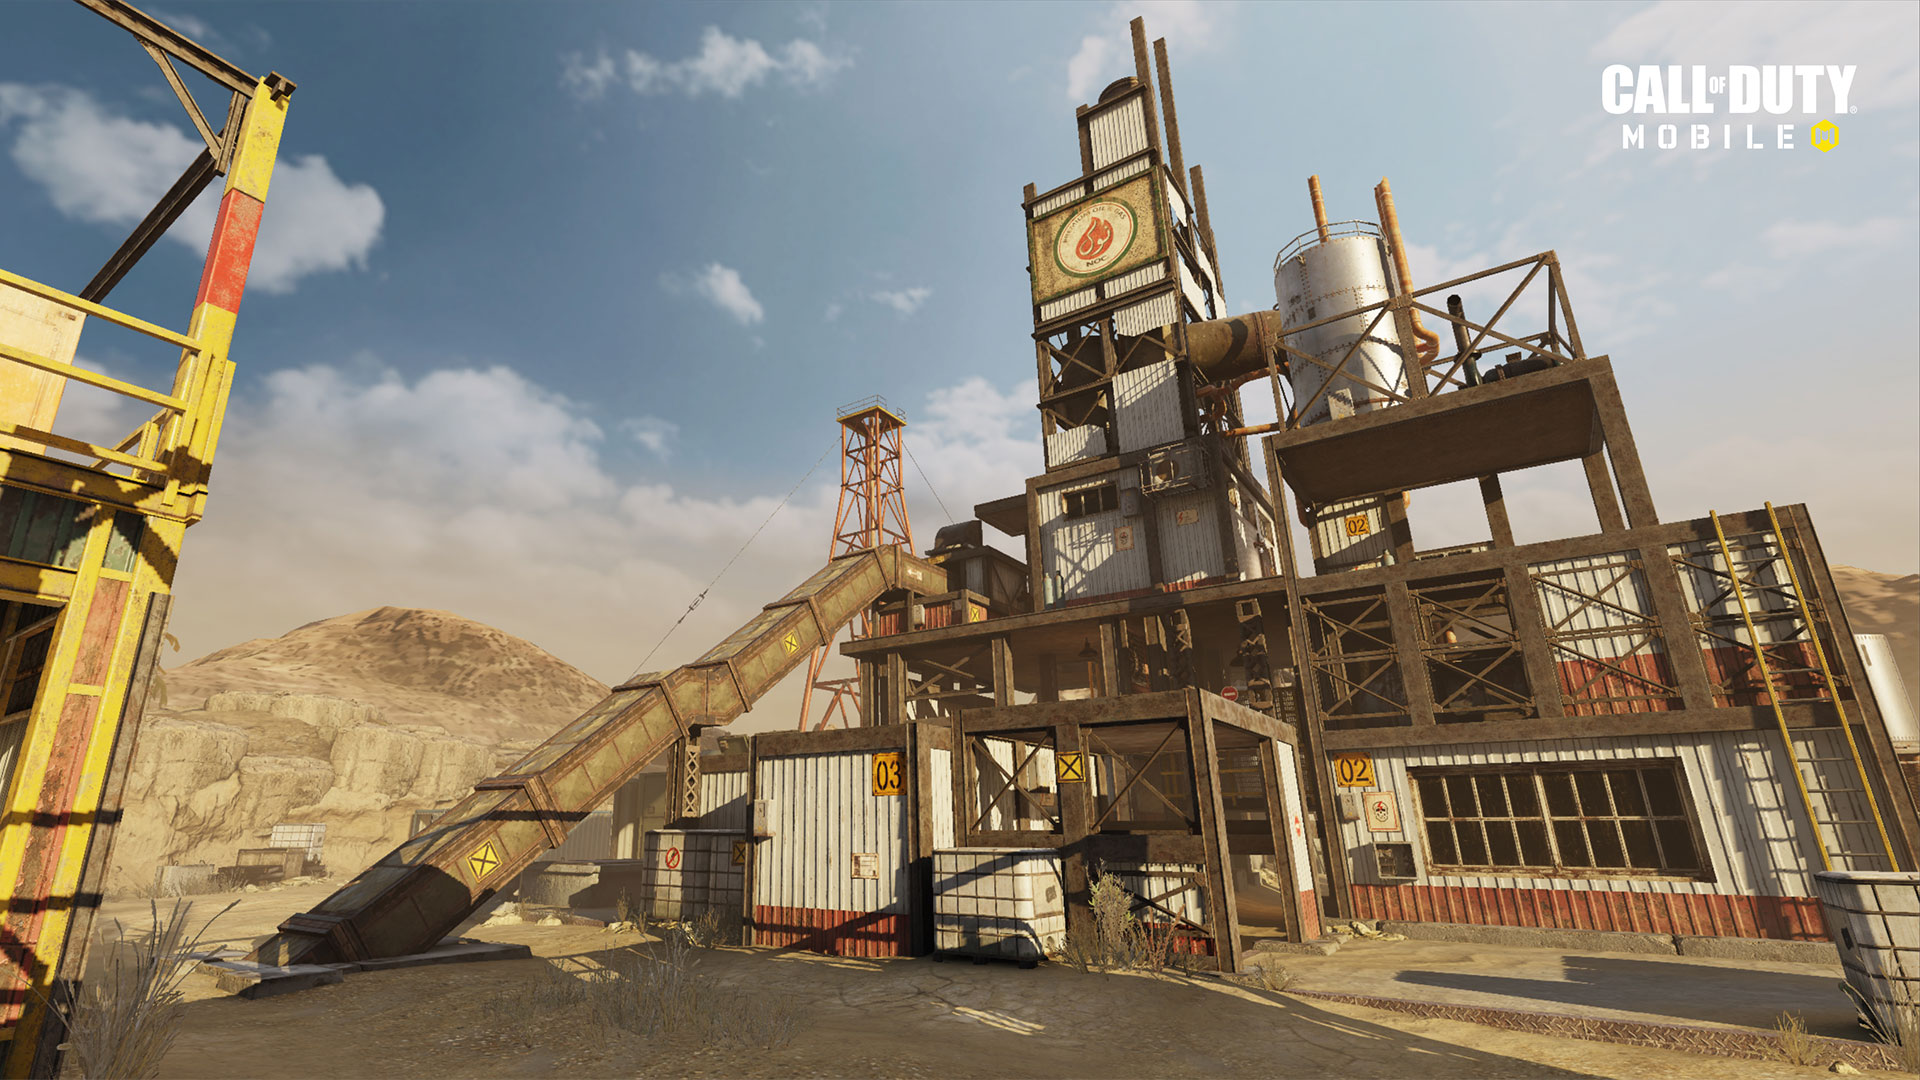 الإصدار 1.0.12 من "Call of Duty: Mobile" متاح الآن بشكل مباشر لتقديم الدعم للموسم التالي "ذات مرة في الصدأ" ، وخرائط جديدة ، وموسم جديد مصنّف ، والمزيد 52